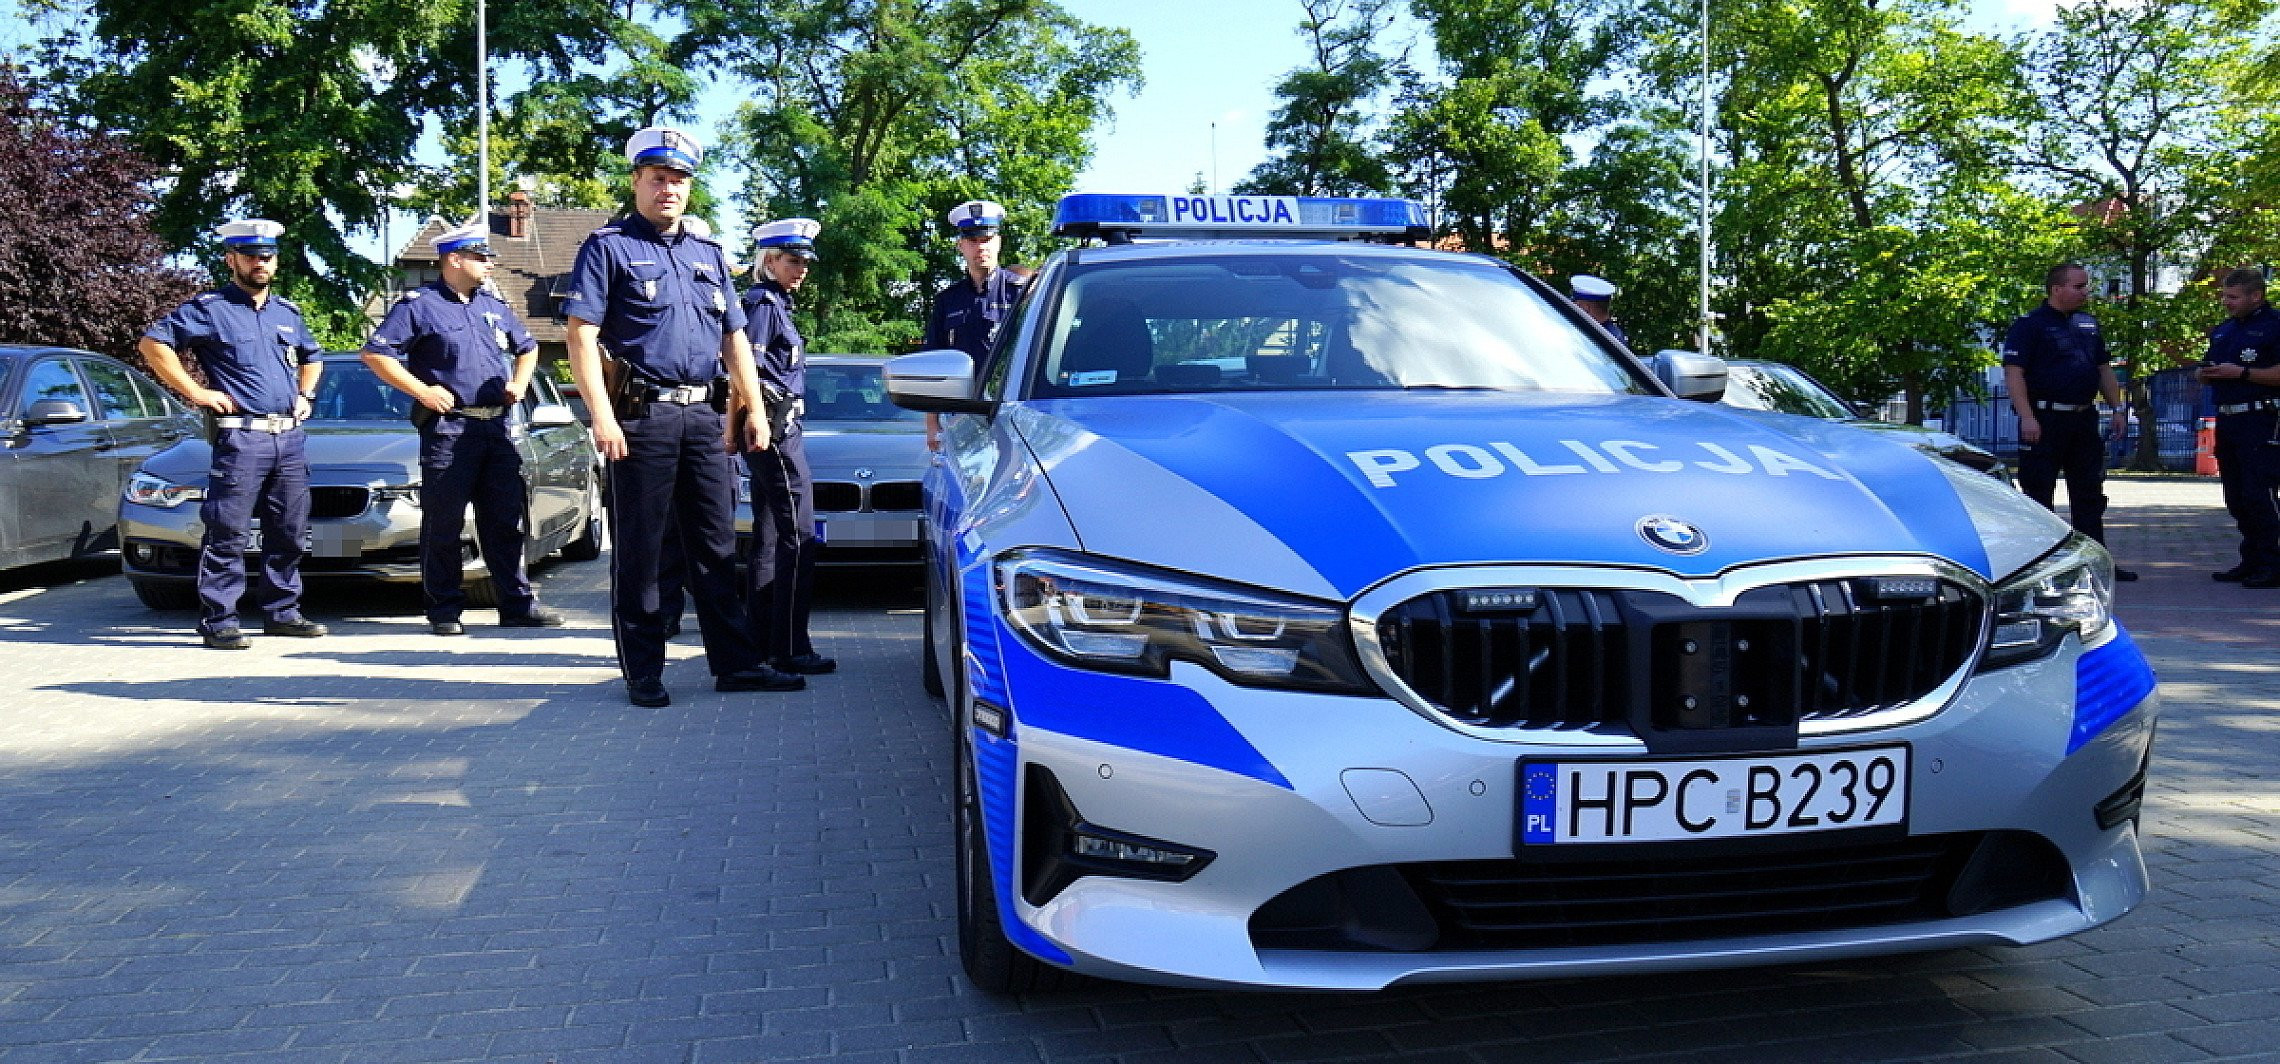 Inowrocław - Policja ma nowe BMW. To grupa "Speed"